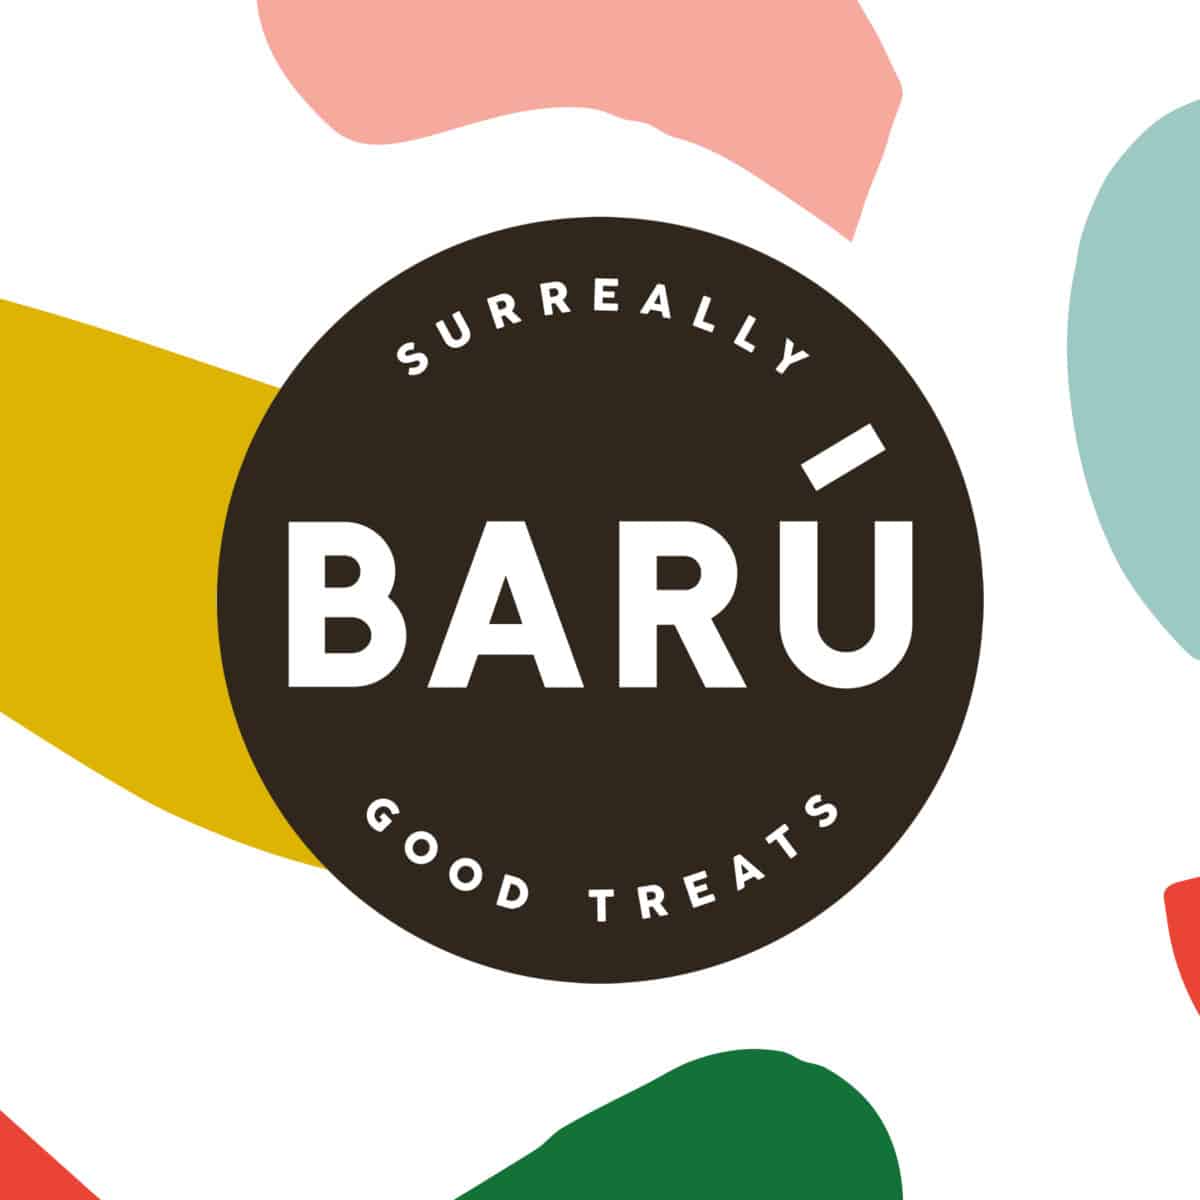 Het logo van Barú: in het midden staat de naam, errond staat geschreven 'Surreally good treats'.